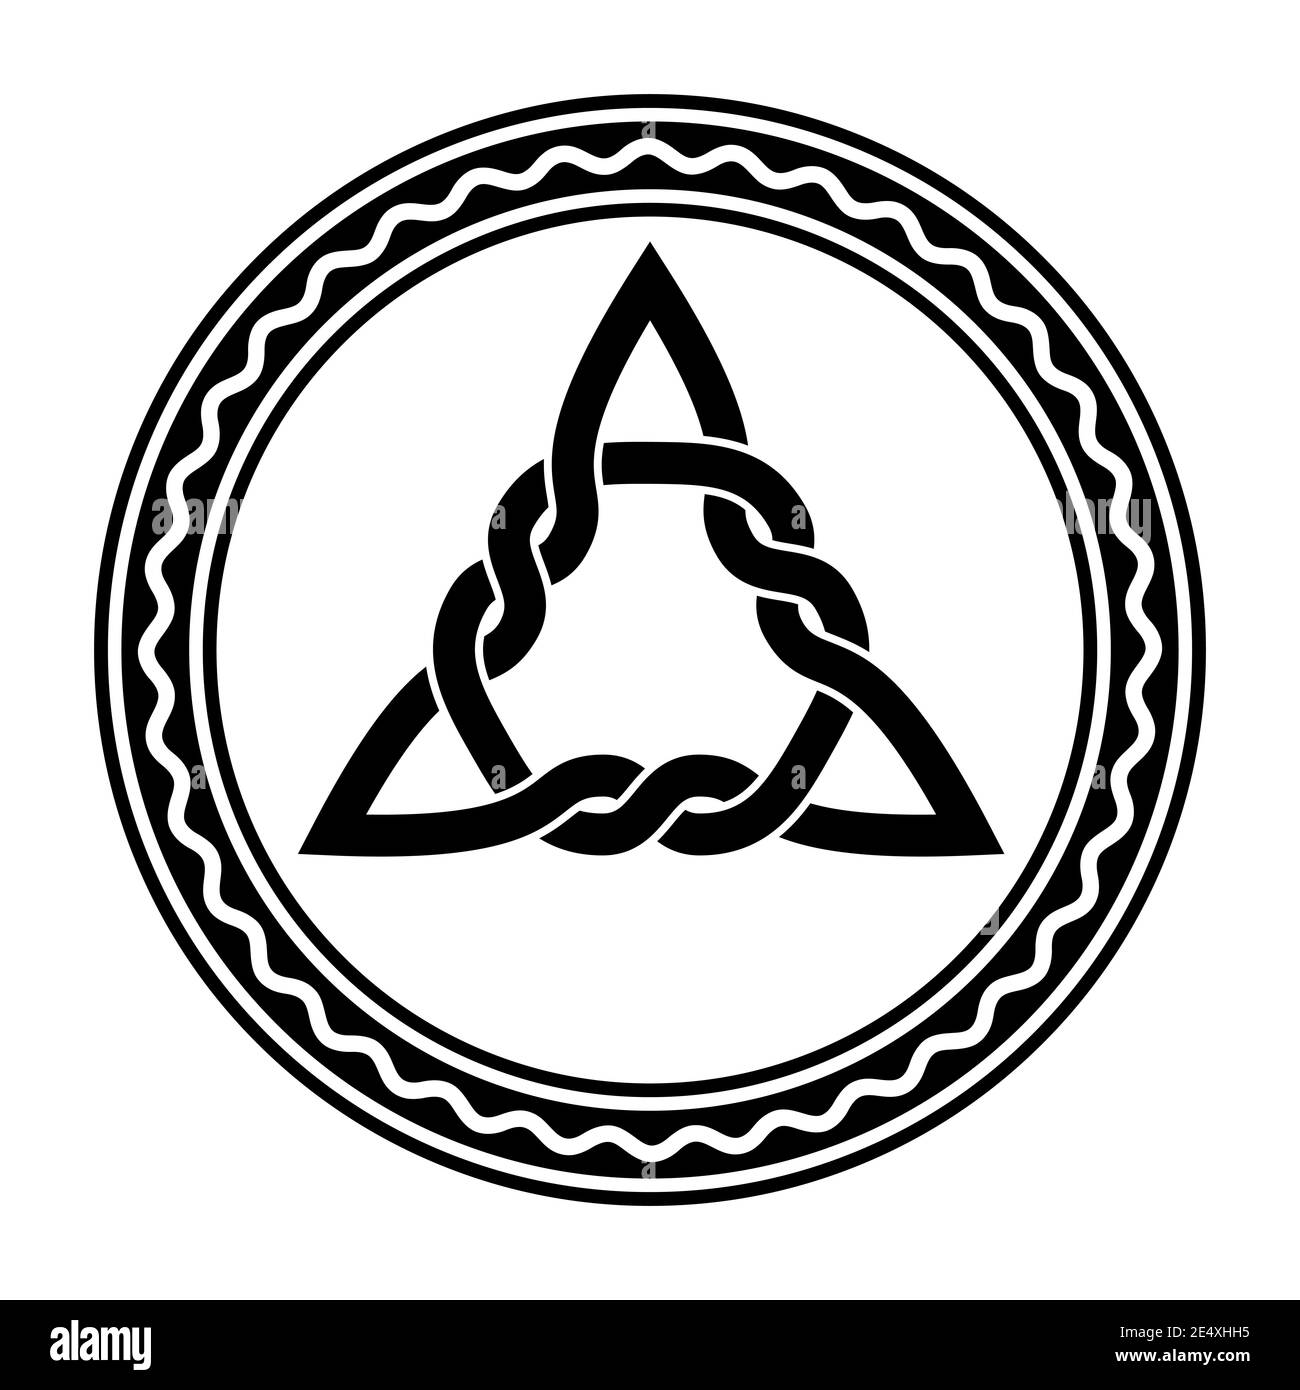 Eingewebter Triquetra, ein keltischer Knoten, in einem Kreisrahmen mit weißer Wellenlinie. Dreieckige Figur, in alten christlichen Ornamentik verwendet. Stockfoto